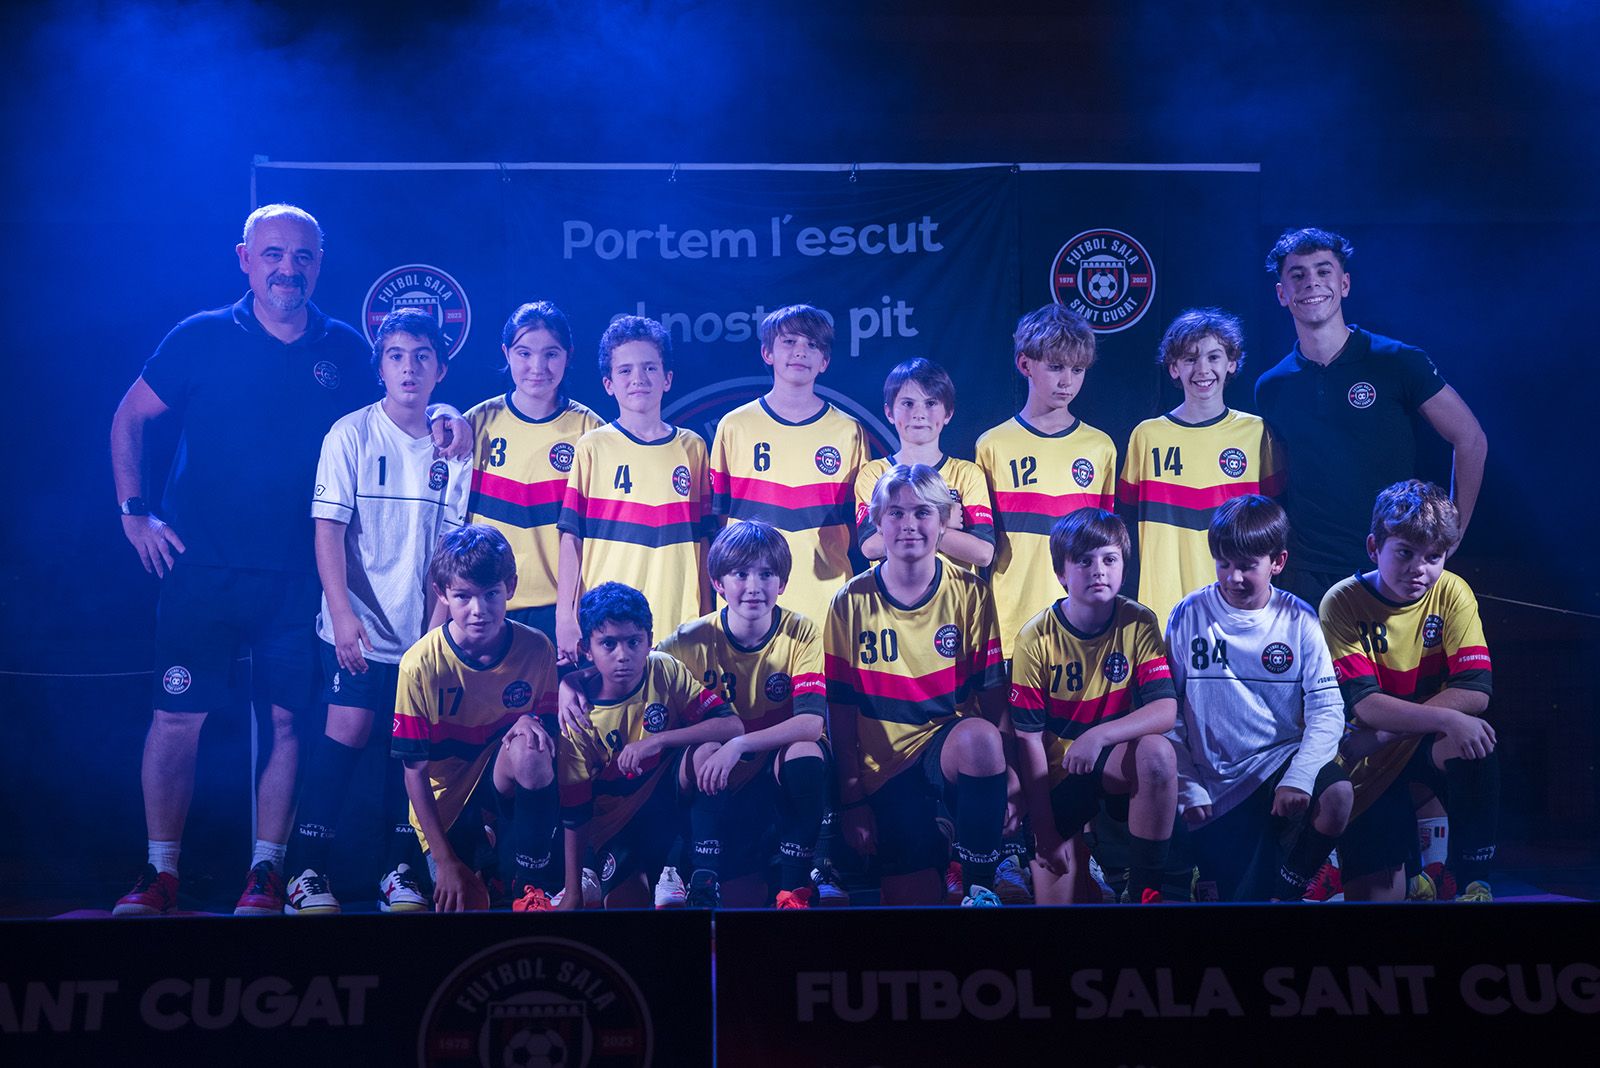 Presentació dels equips de Futbol Sala Sant Cugat. FOTO: Bernat Millet.